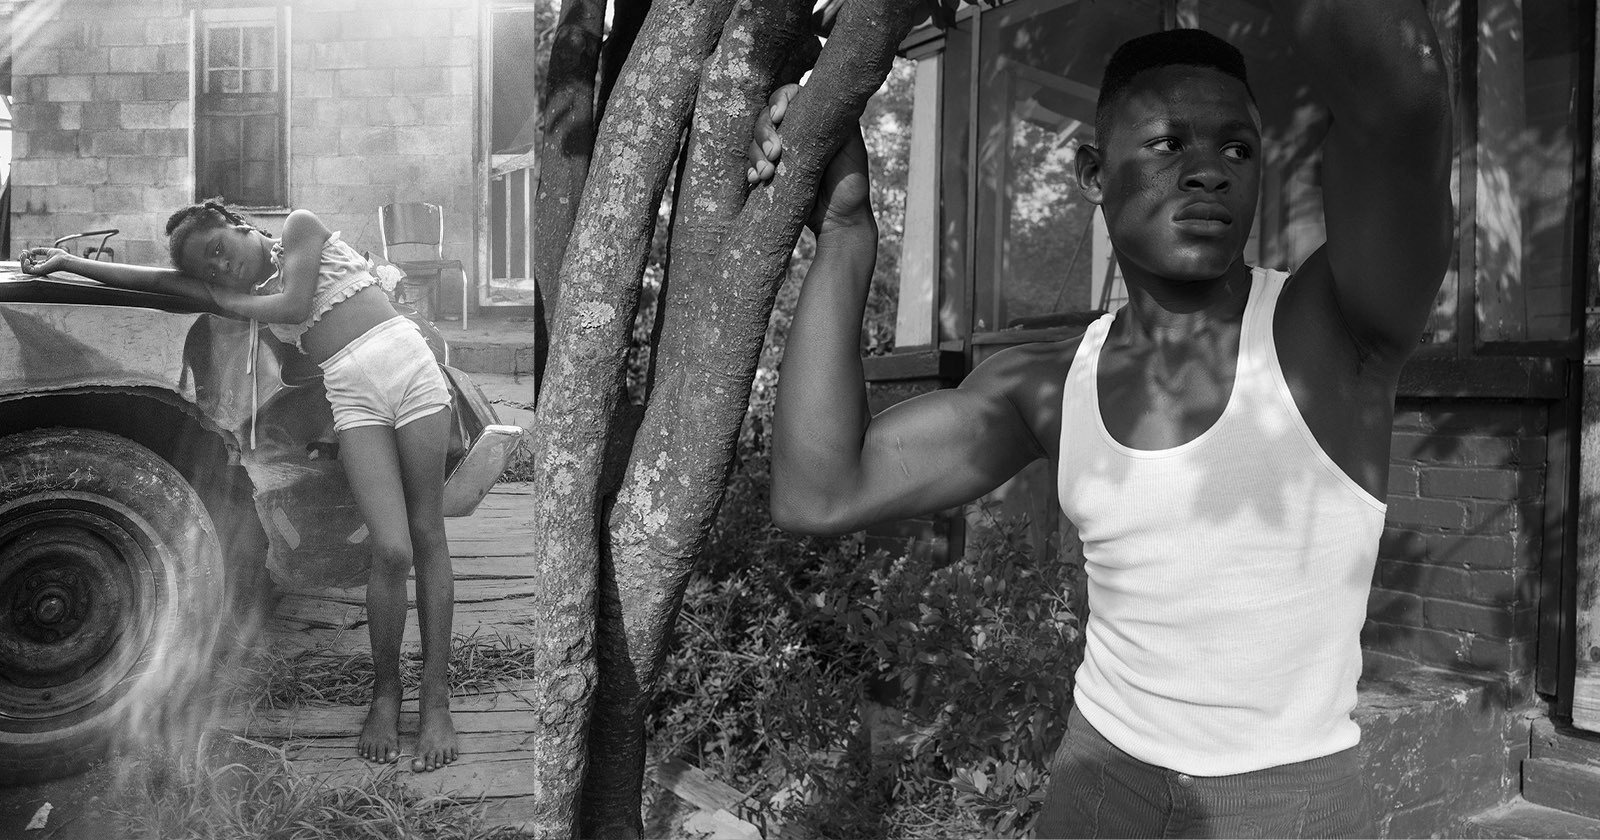  large format photos document black communities 1980s 